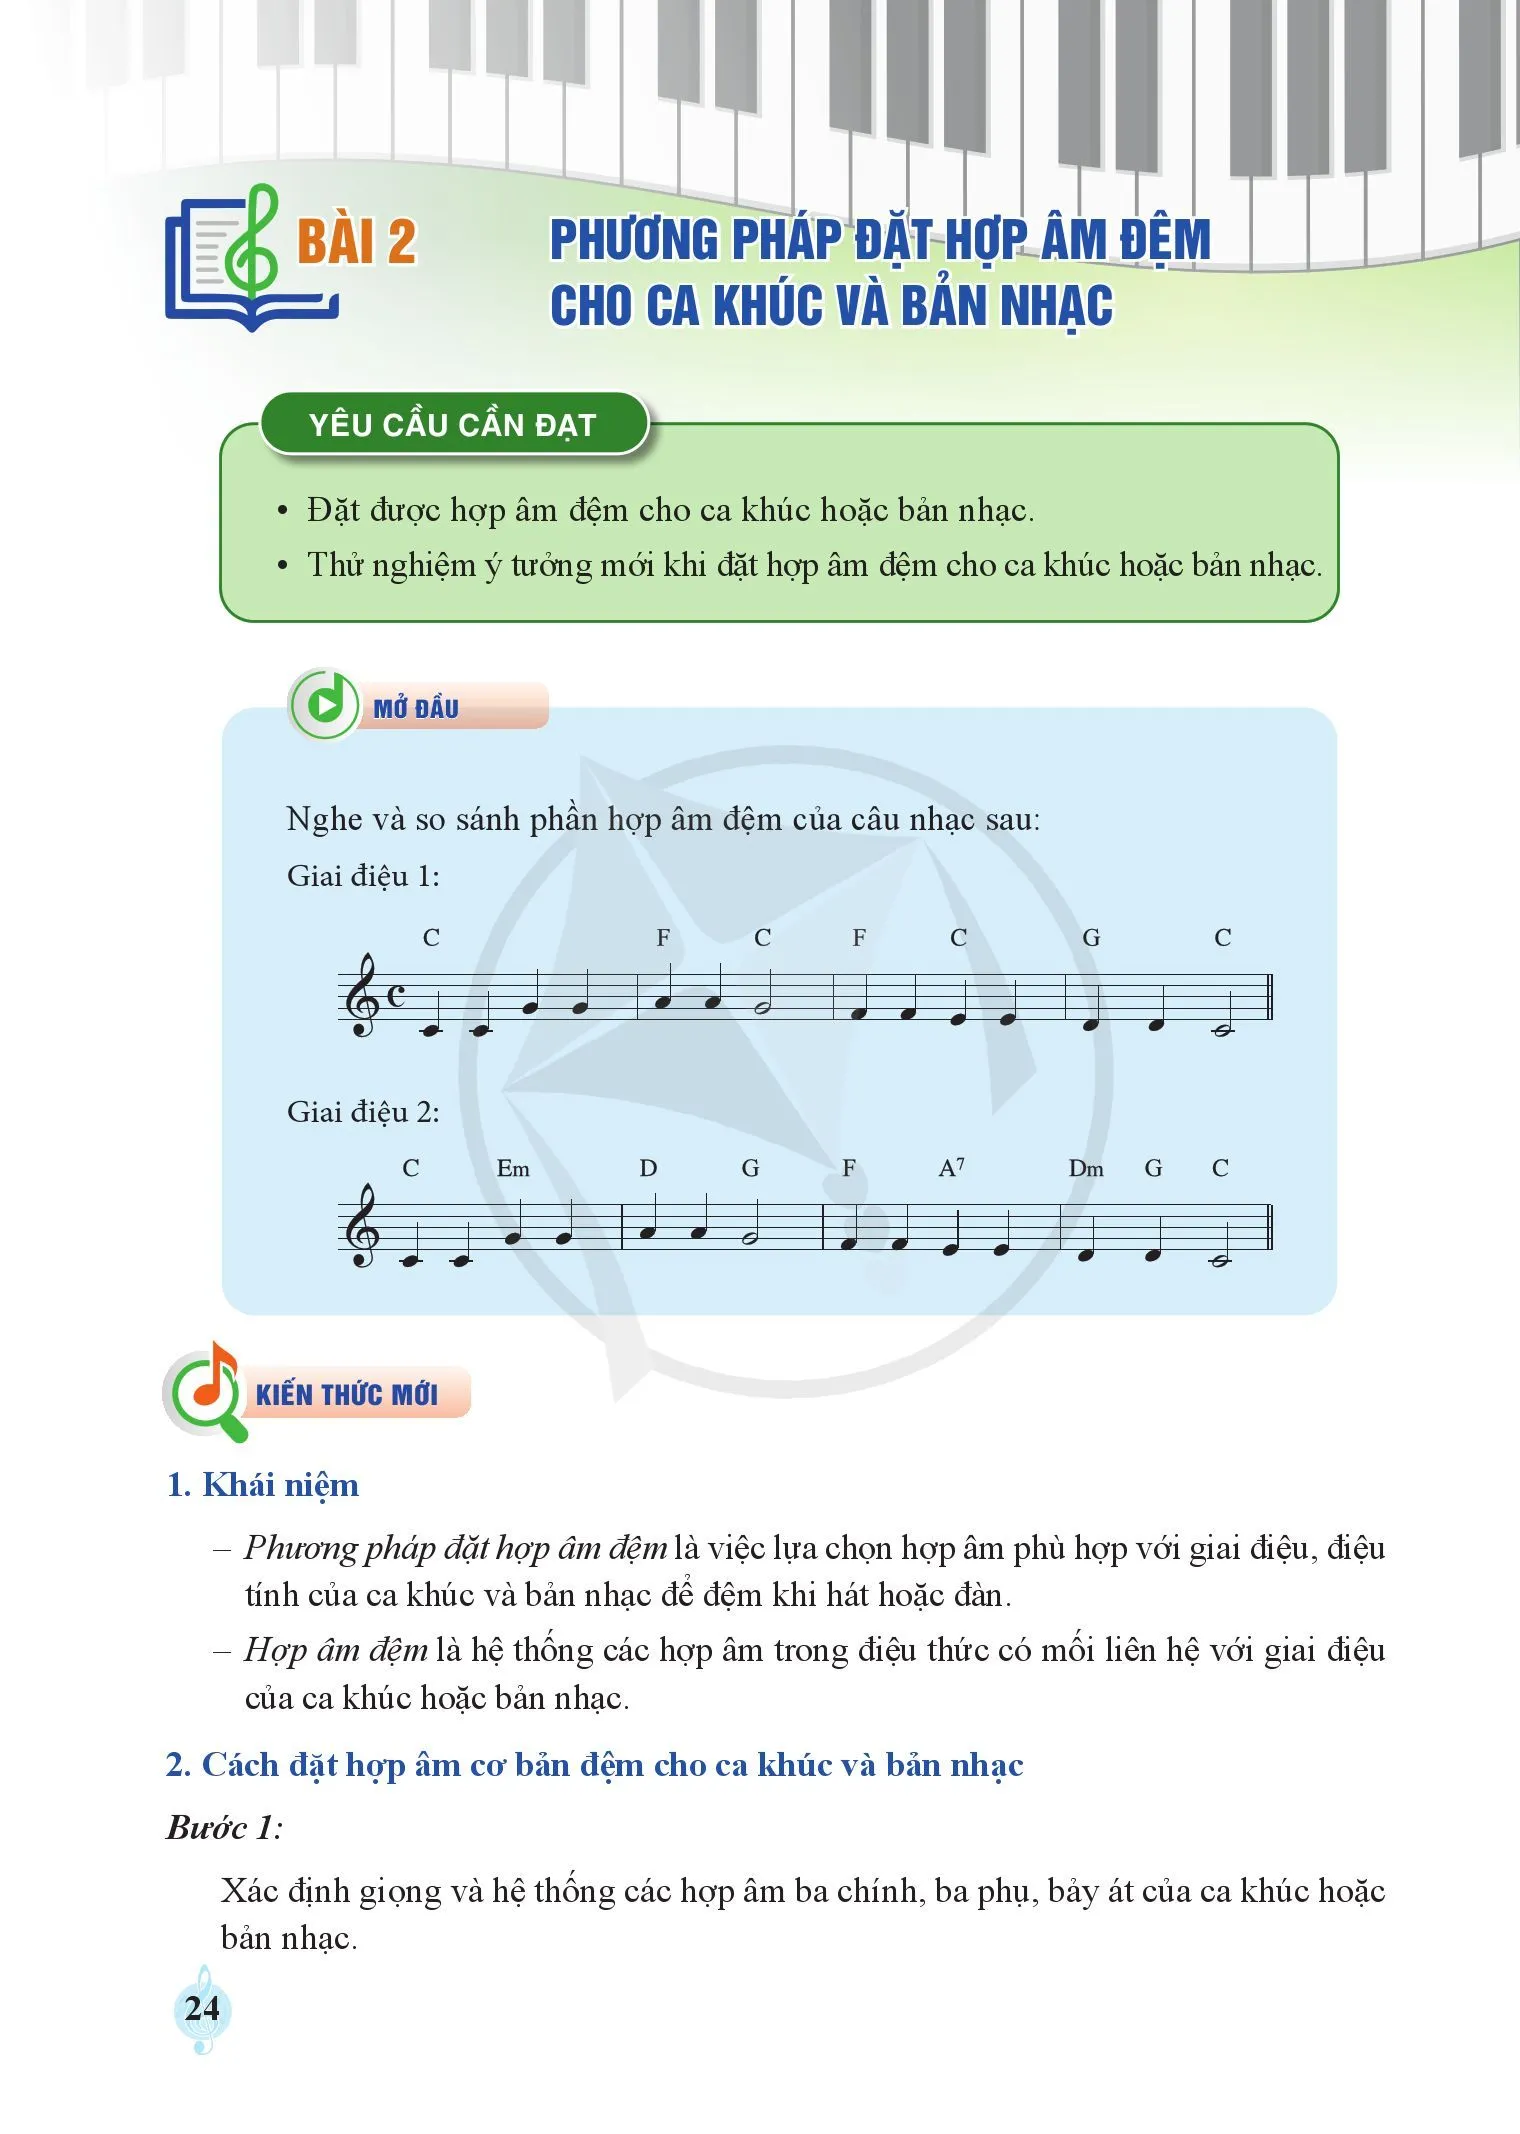 Bài 1: Phương pháp xác định giọng cho ca khúc và bản nhạc